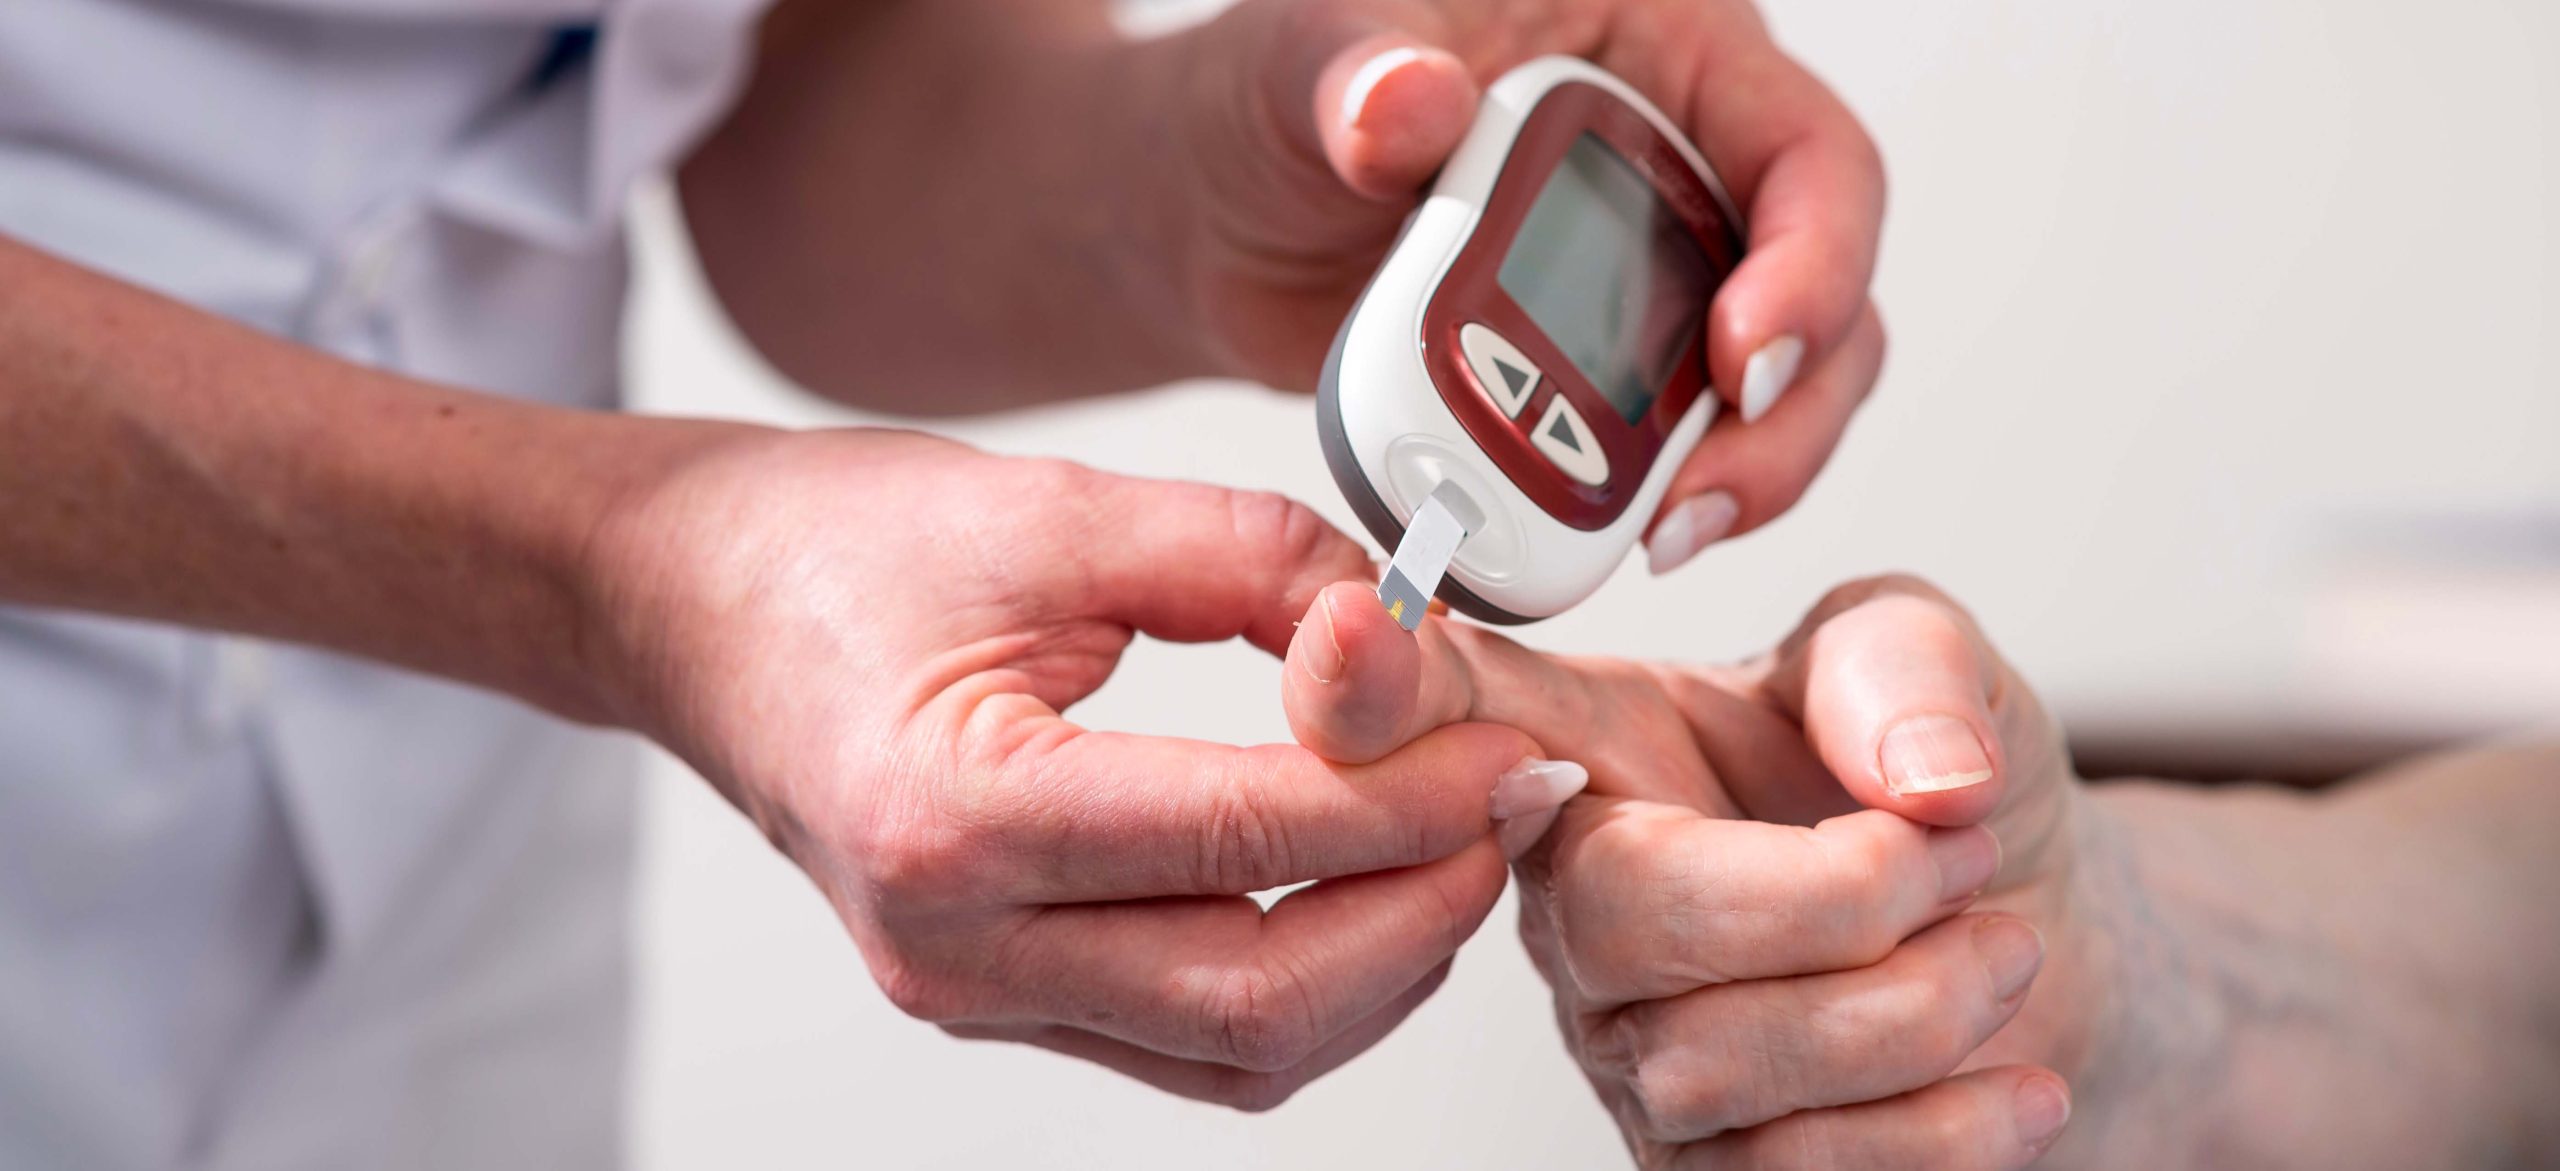 Dispositivi per la misurazione della glicemia gratuiti per i diabetici romagnoli